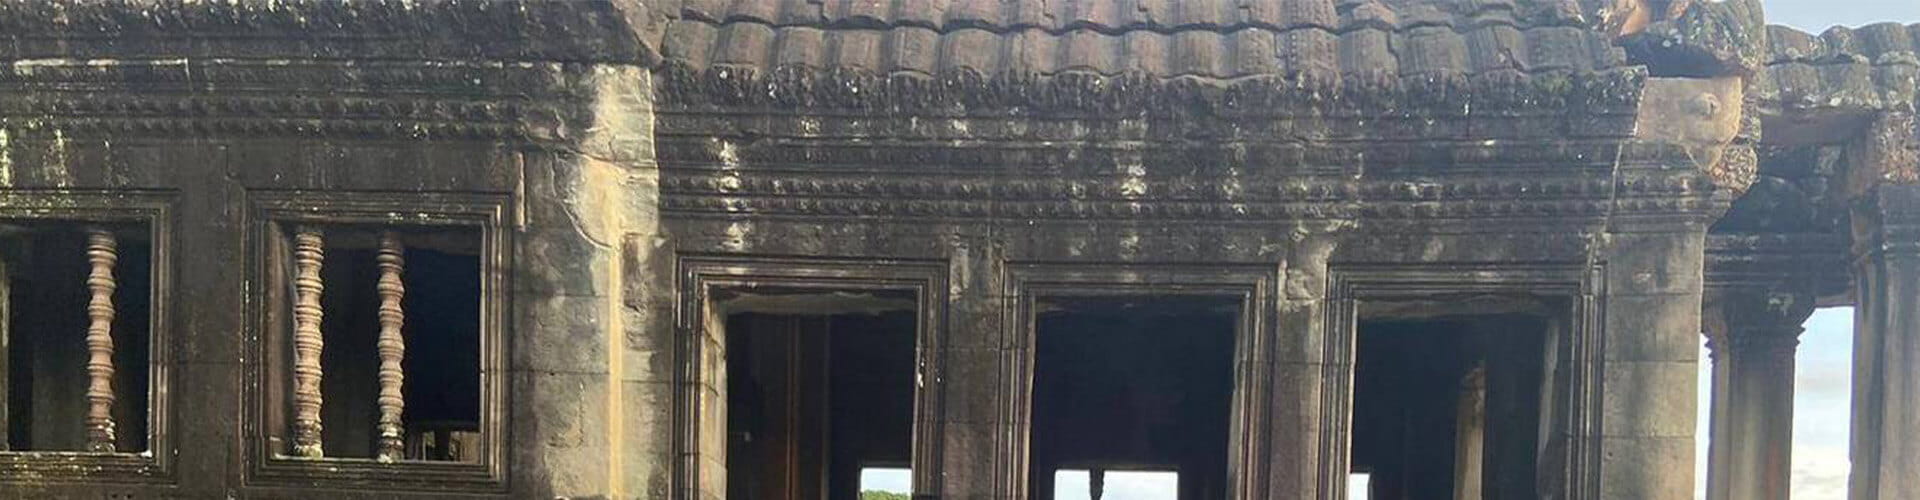 cambodia temples